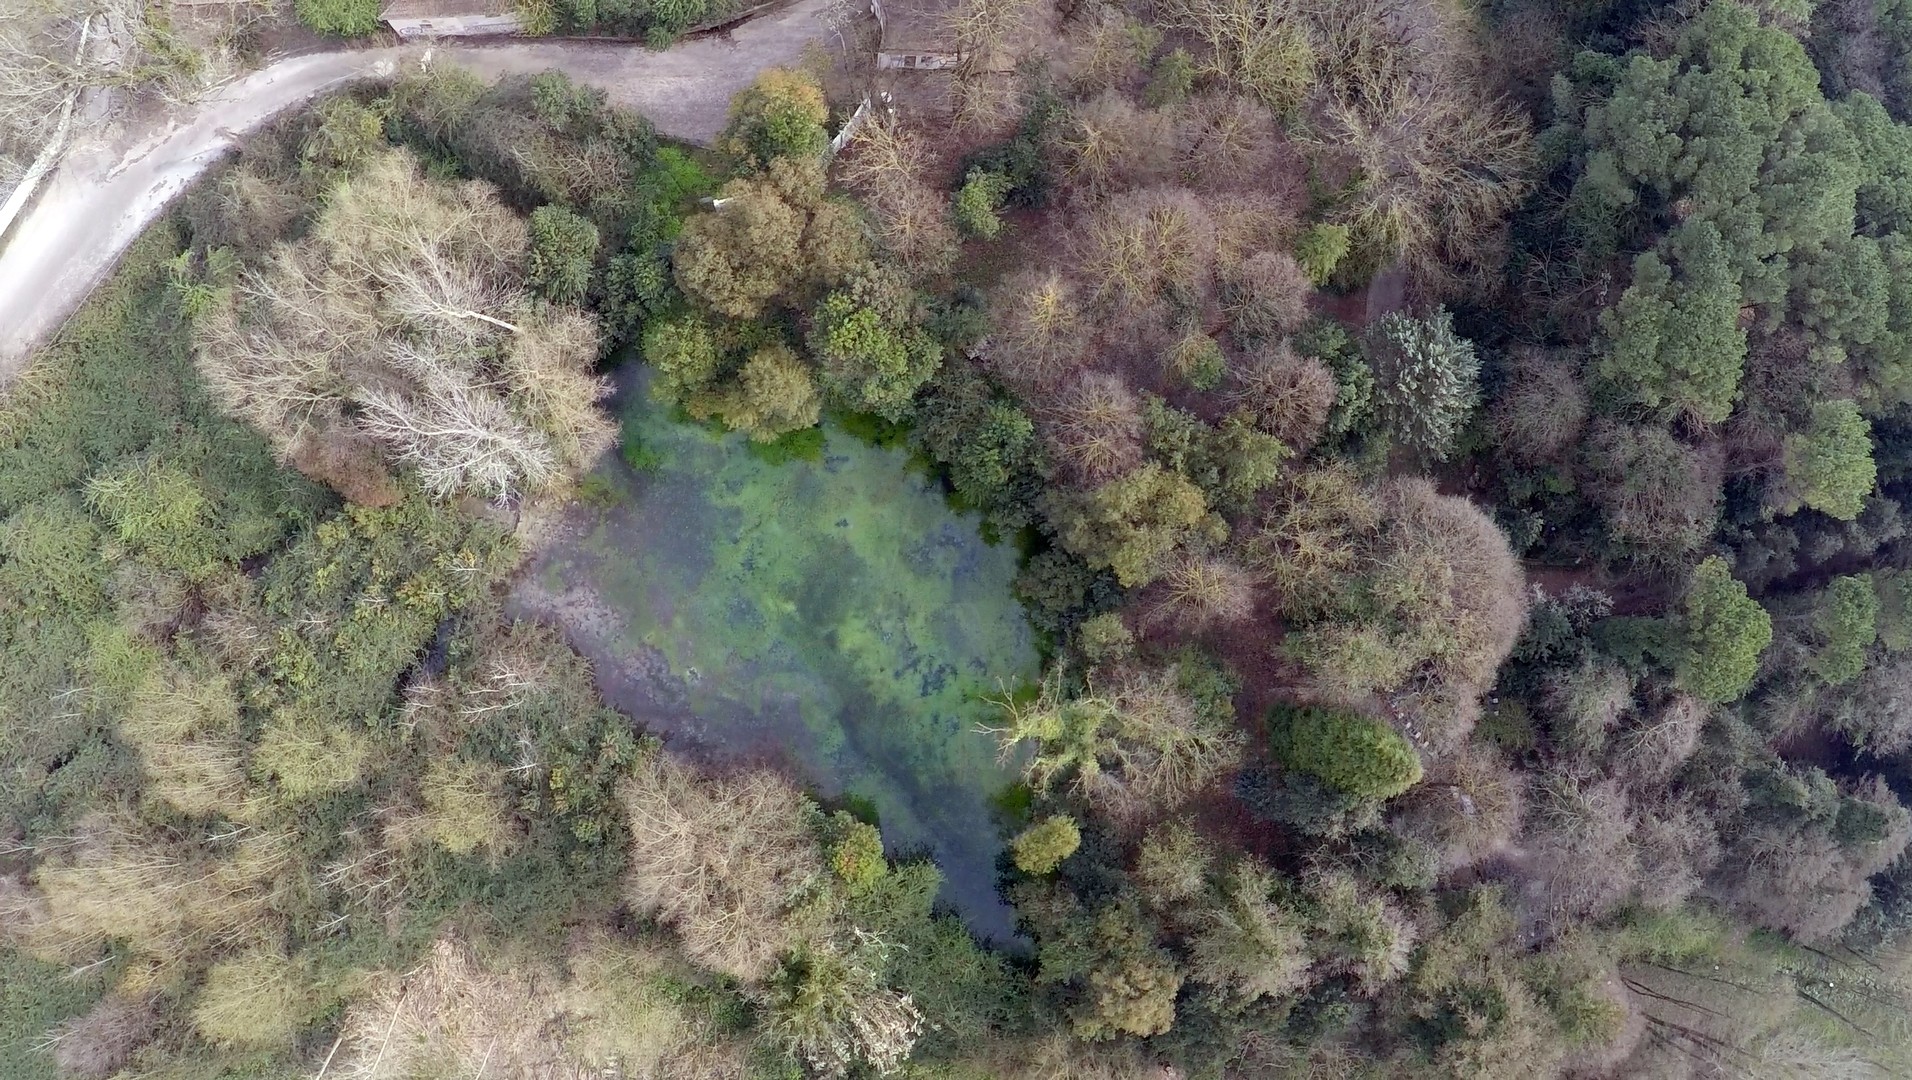 Sorgente fiume Gari - foto drone - anno 2015